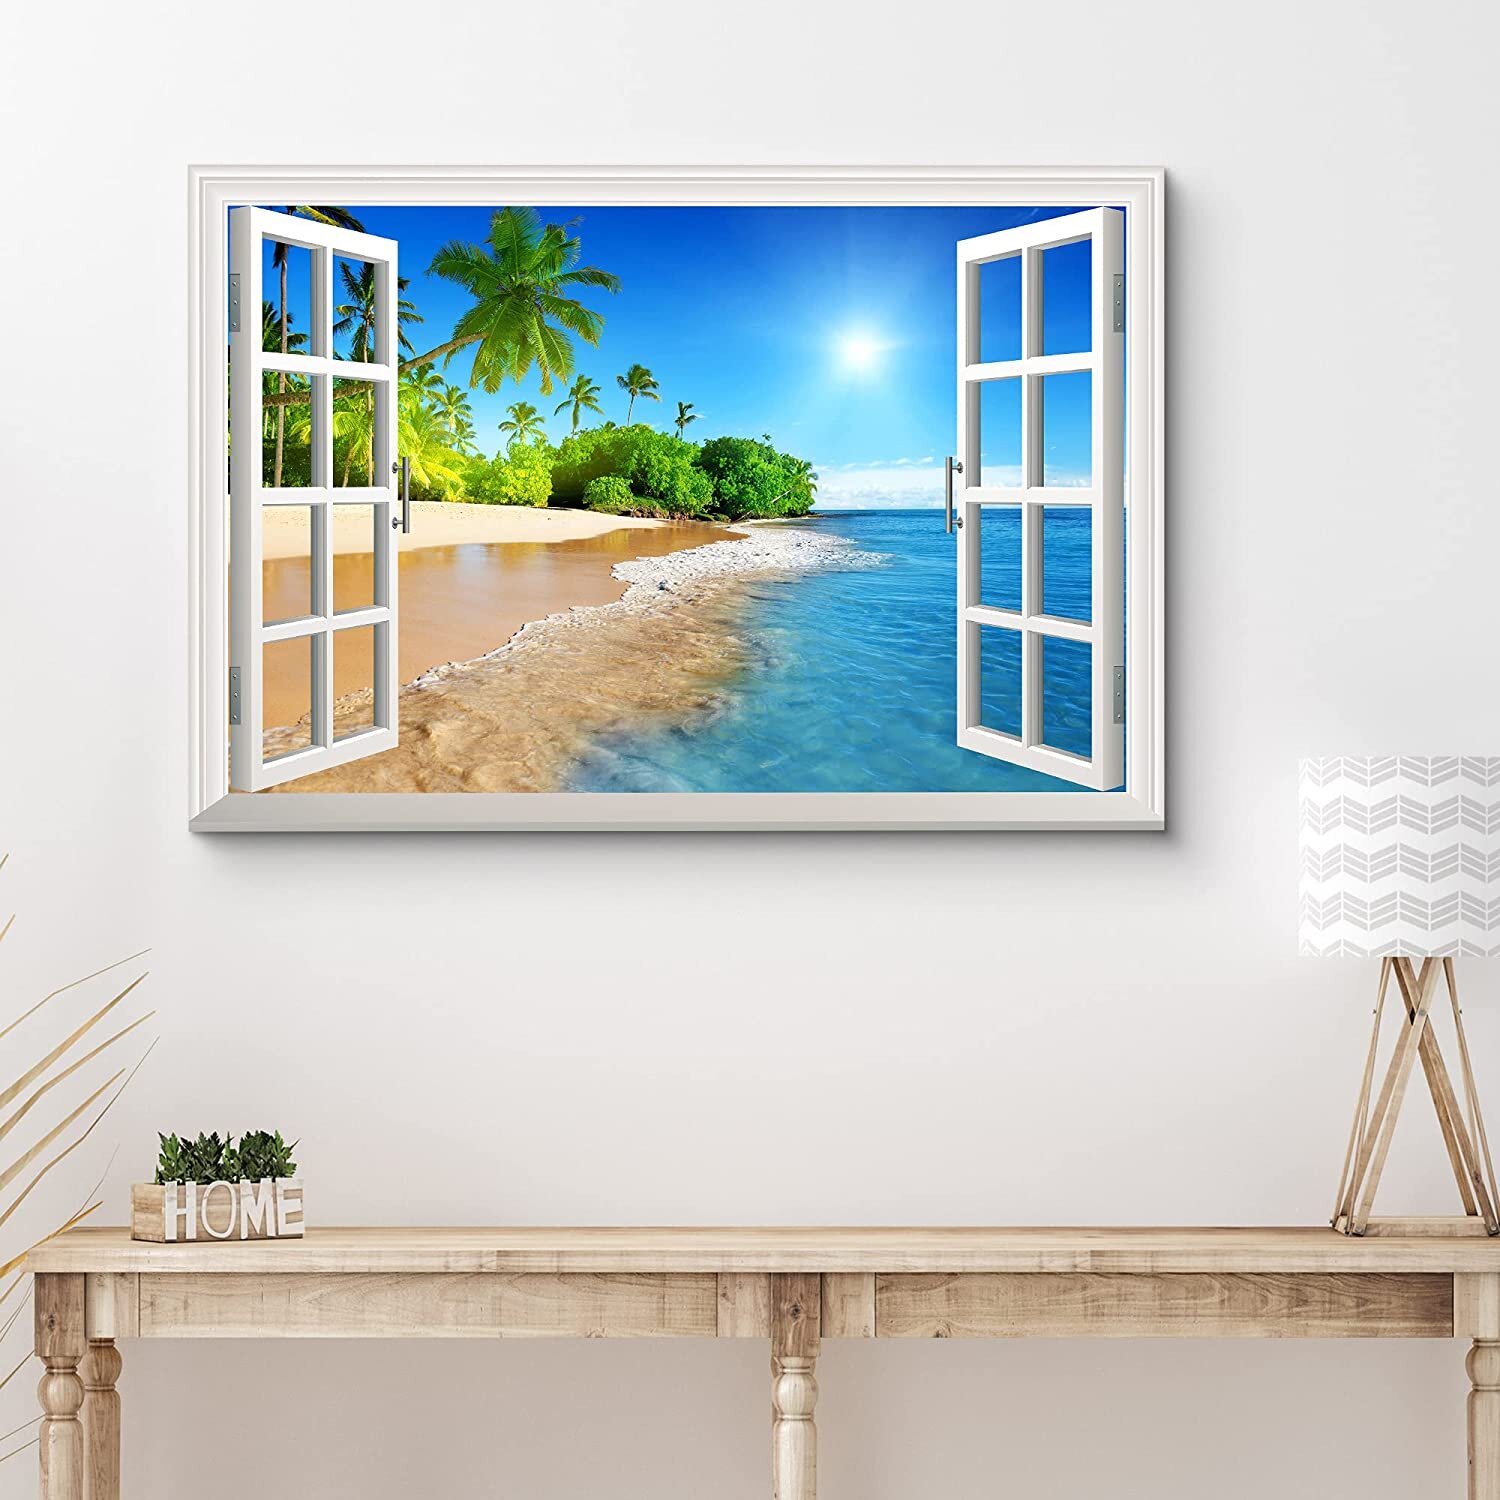 IDEA4WALL Window Scenery Tropical Beach Under Sunny Sky On Canvas Print   Reviews Wayfair